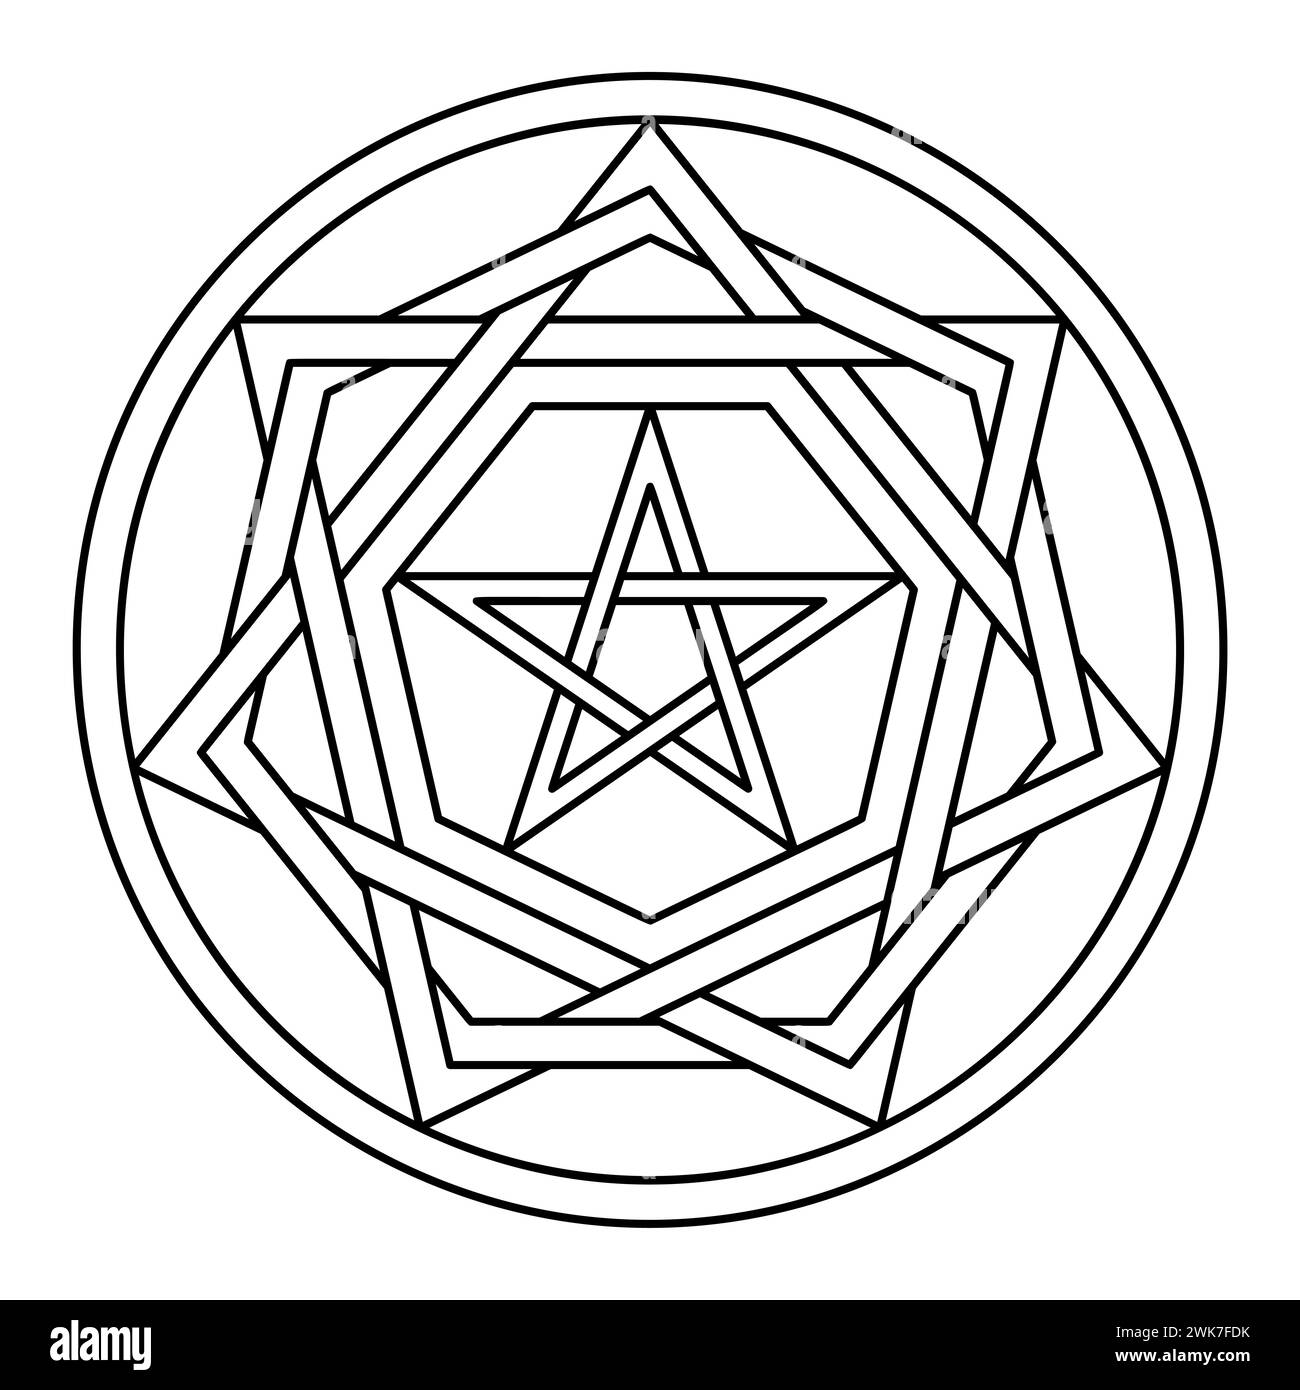 Sigillum Dei, Siegel Gottes oder Siegel der Wahrheit. Geometrische Grundstruktur des Symbols des lebendigen Gottes, wie es in einem Buch aus dem 14. Jahrhundert beschrieben wurde. Stockfoto